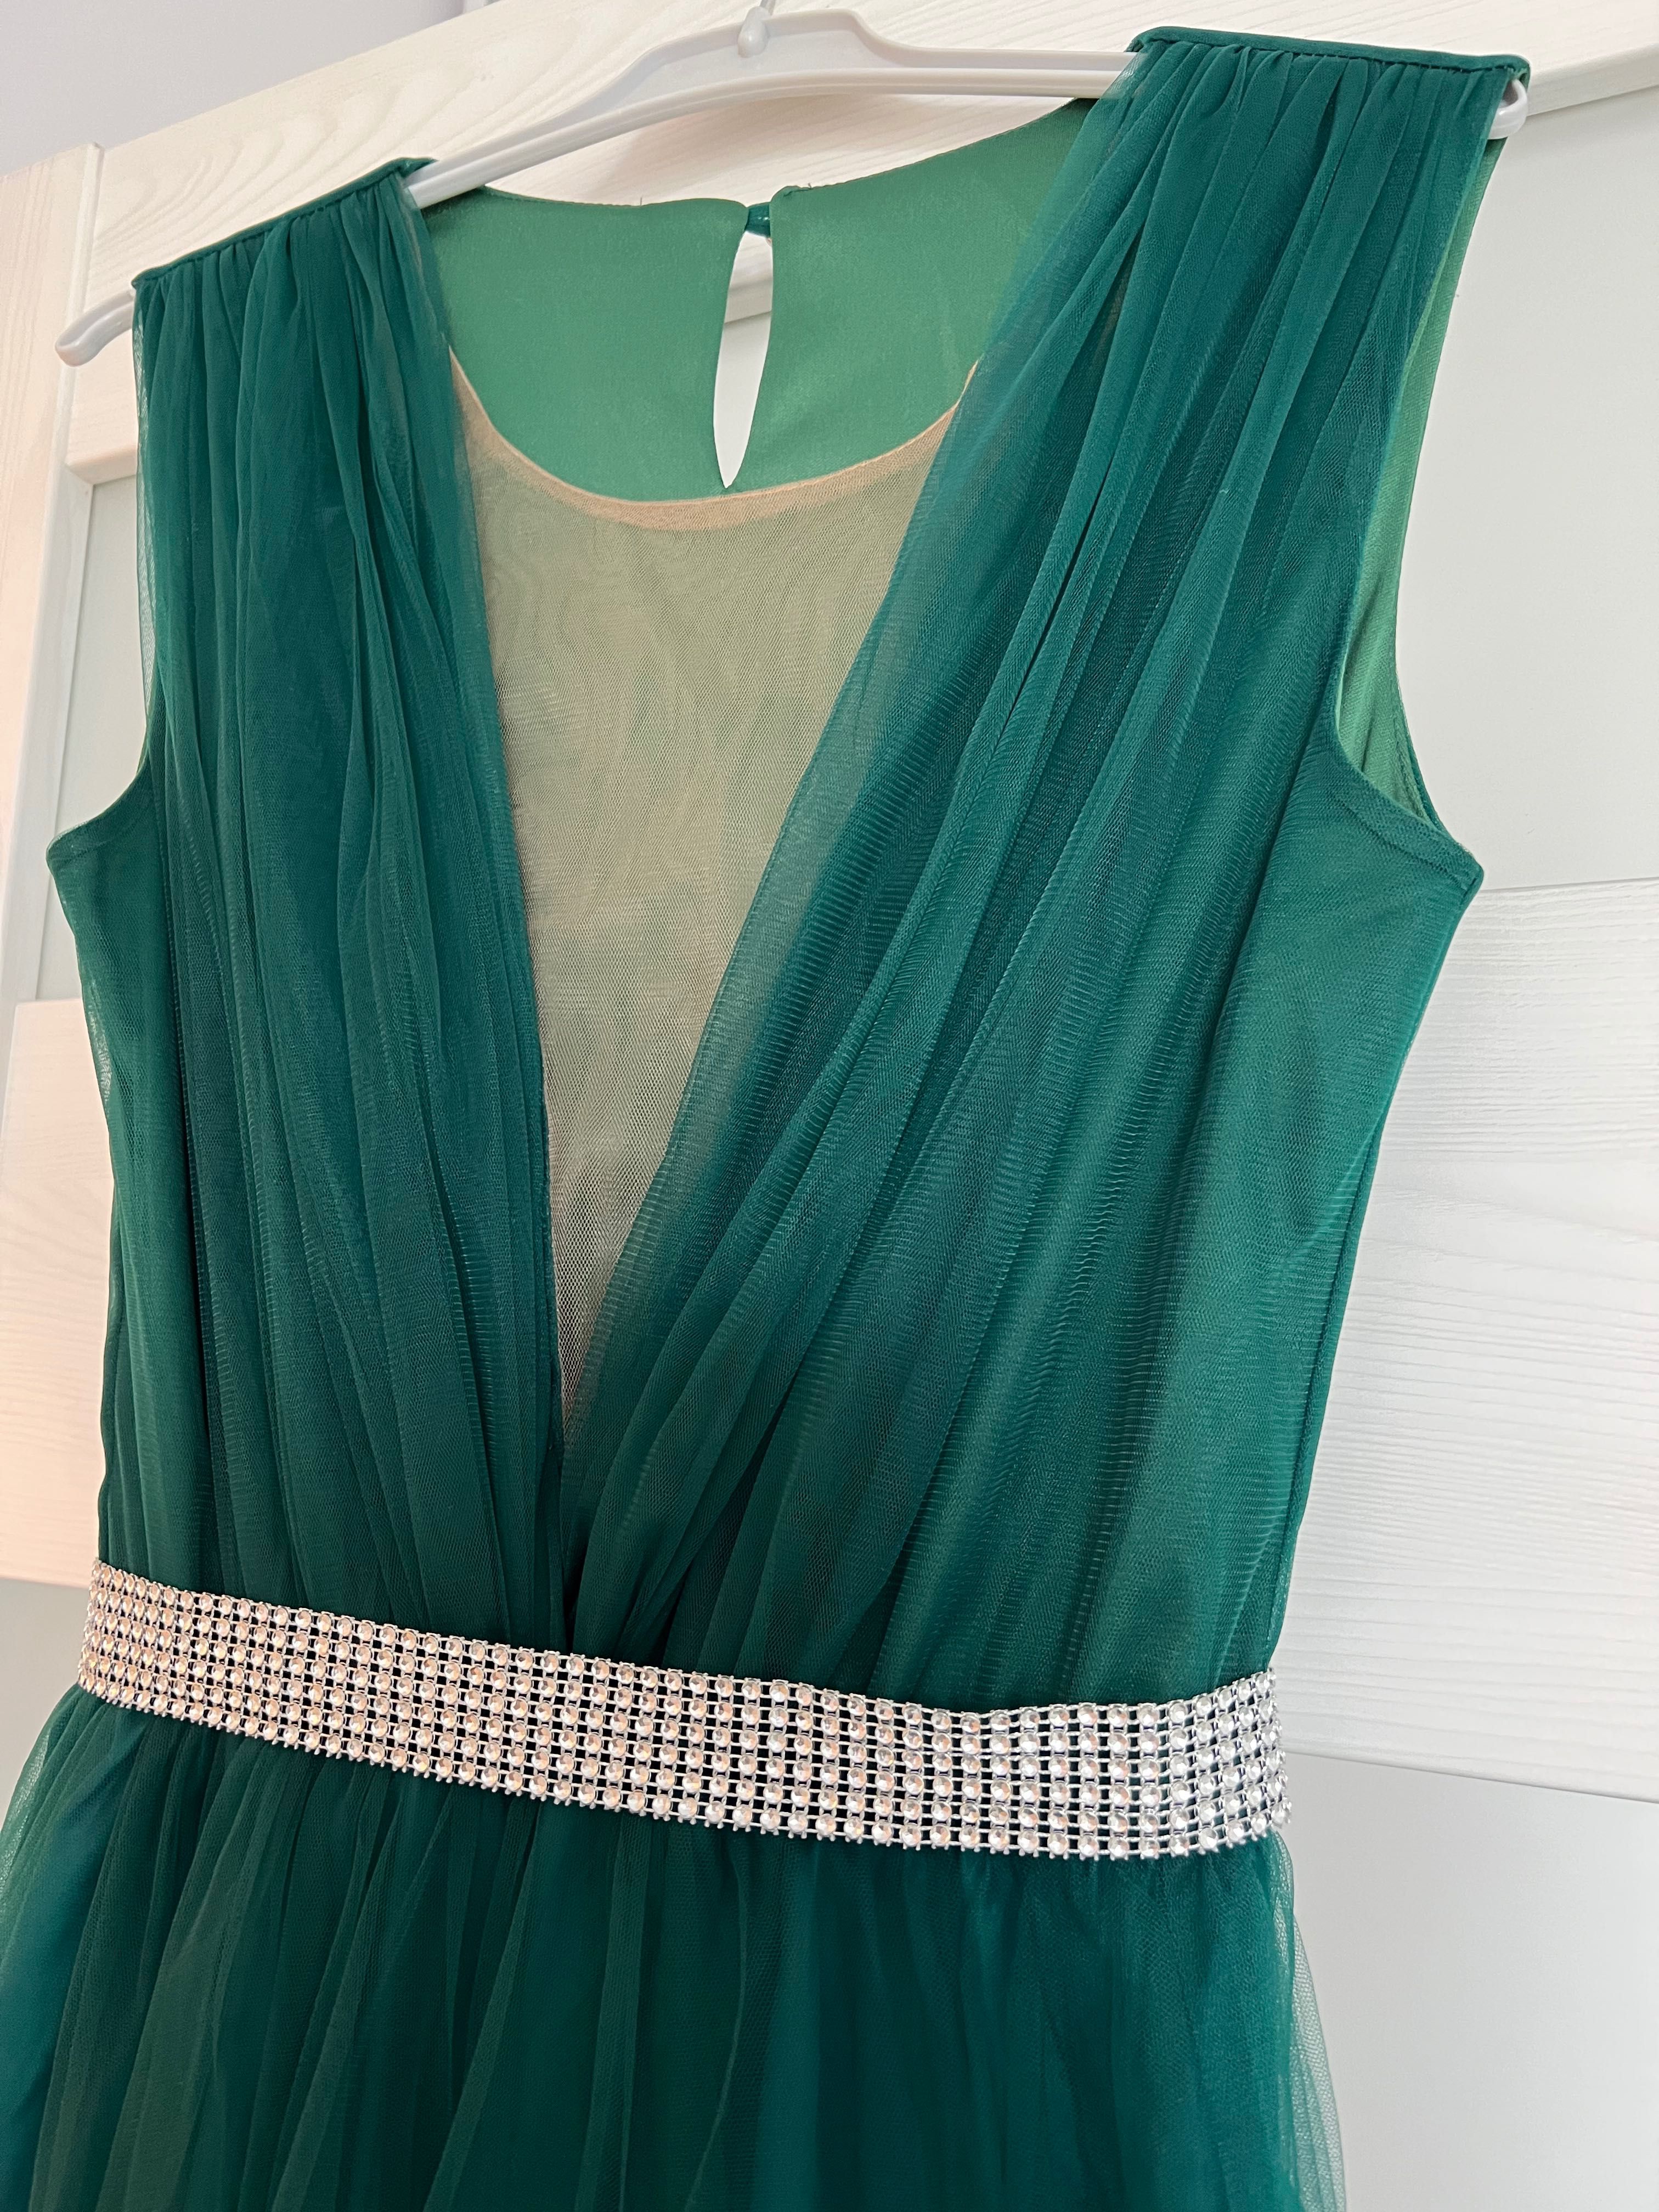 Rochie de ocazie din tulle (Verde-smarald)